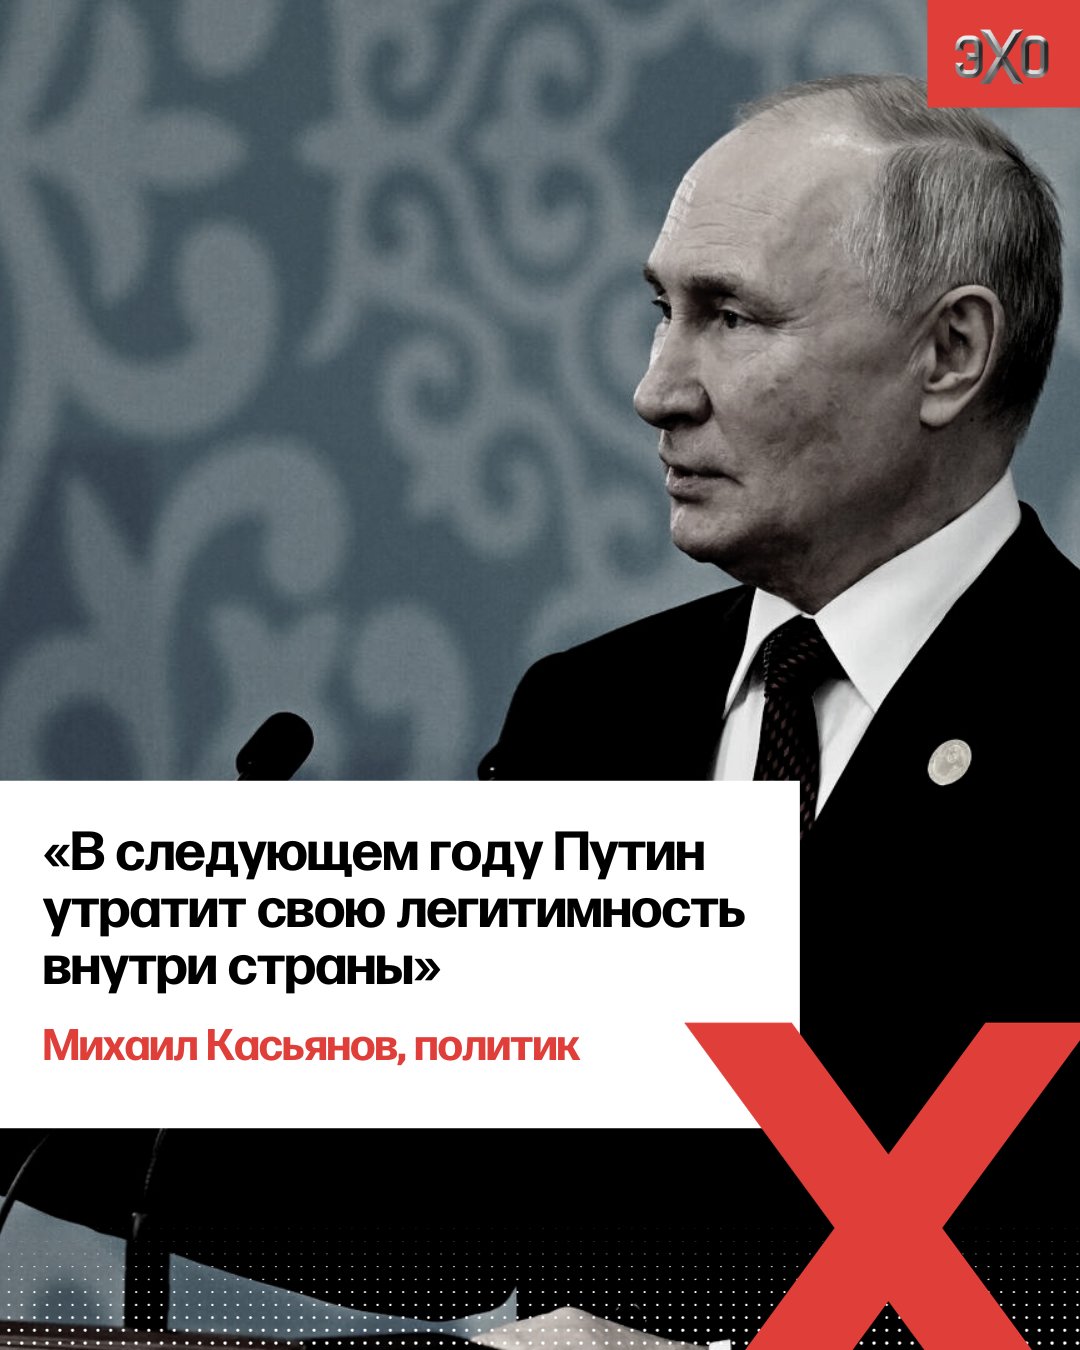 ЭХО on X: 🔻«Реальная поддержка будет у него процентов 20 по стране».  Политик Михаил Касьянов — о поддержке Путина на выборах президента в 2024  году «Президенту сейчас объявят поддержку 85%. Но многие